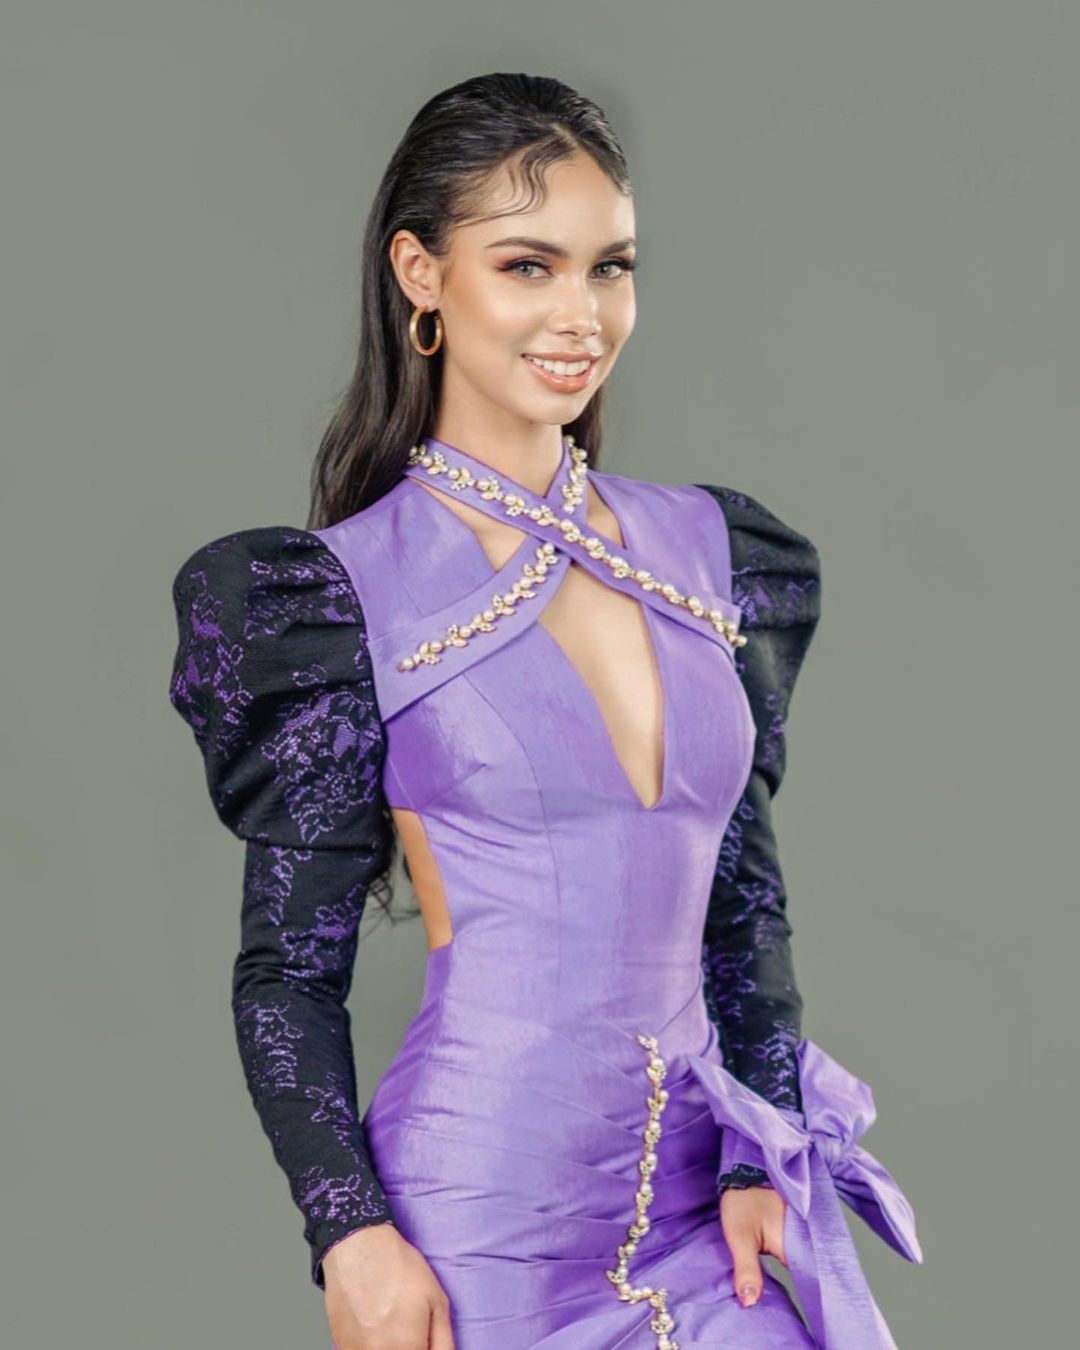 Vóc dáng đồng hồ cát của Hoa hậu Hoàn vũ Campuchia - Ảnh 11.